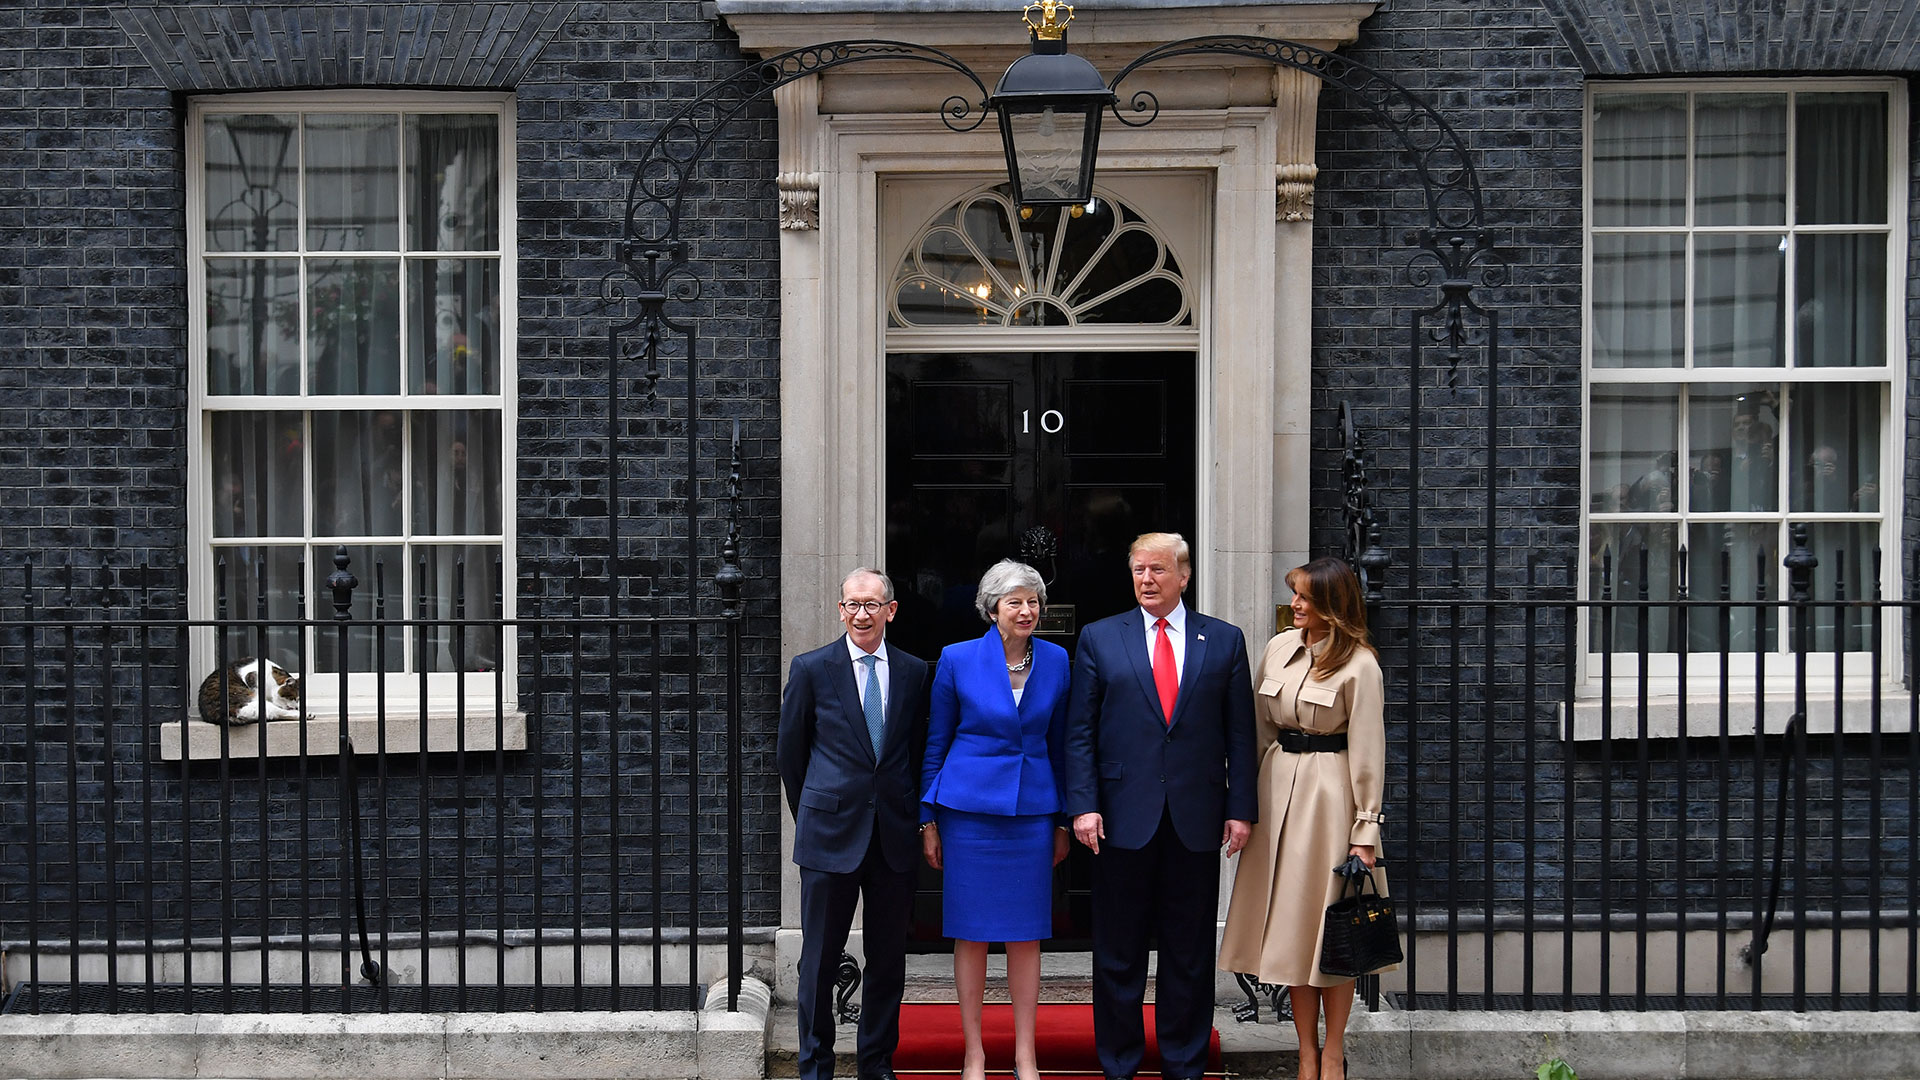 El gato Larry se sienta en el alféizar de la ventana mientras la entonces premier británica Theresa May y su esposo Philip May saludan al entonces presidente estadounidense Donald Trump y a la Primera Dama Melania Trump (Reuters)